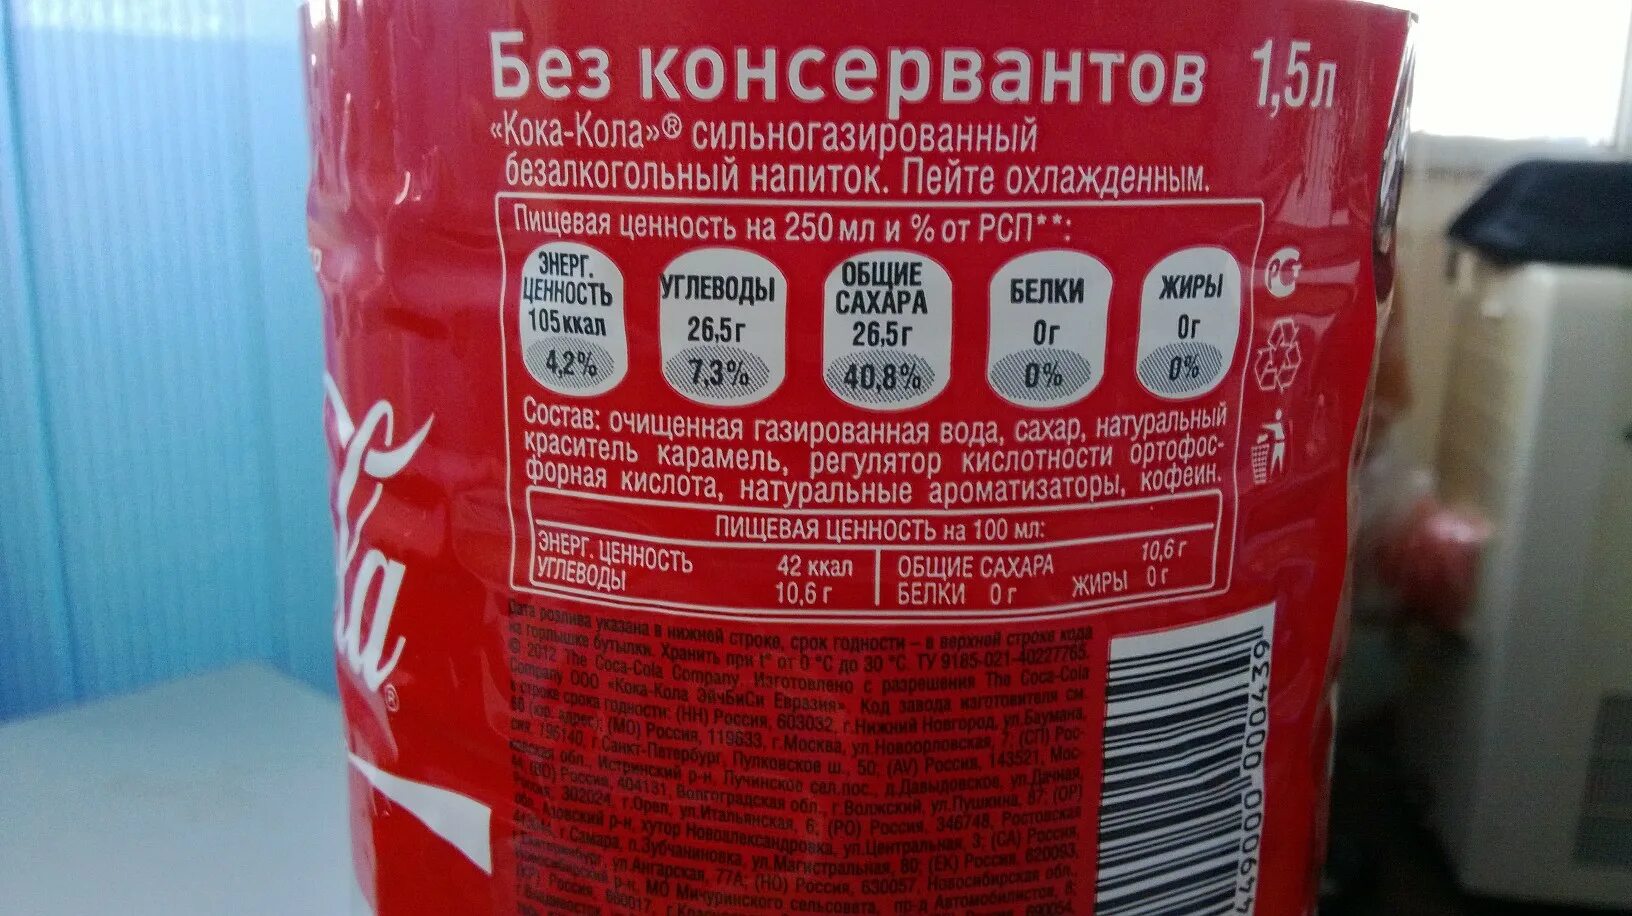 Кока кола сколько углеводов